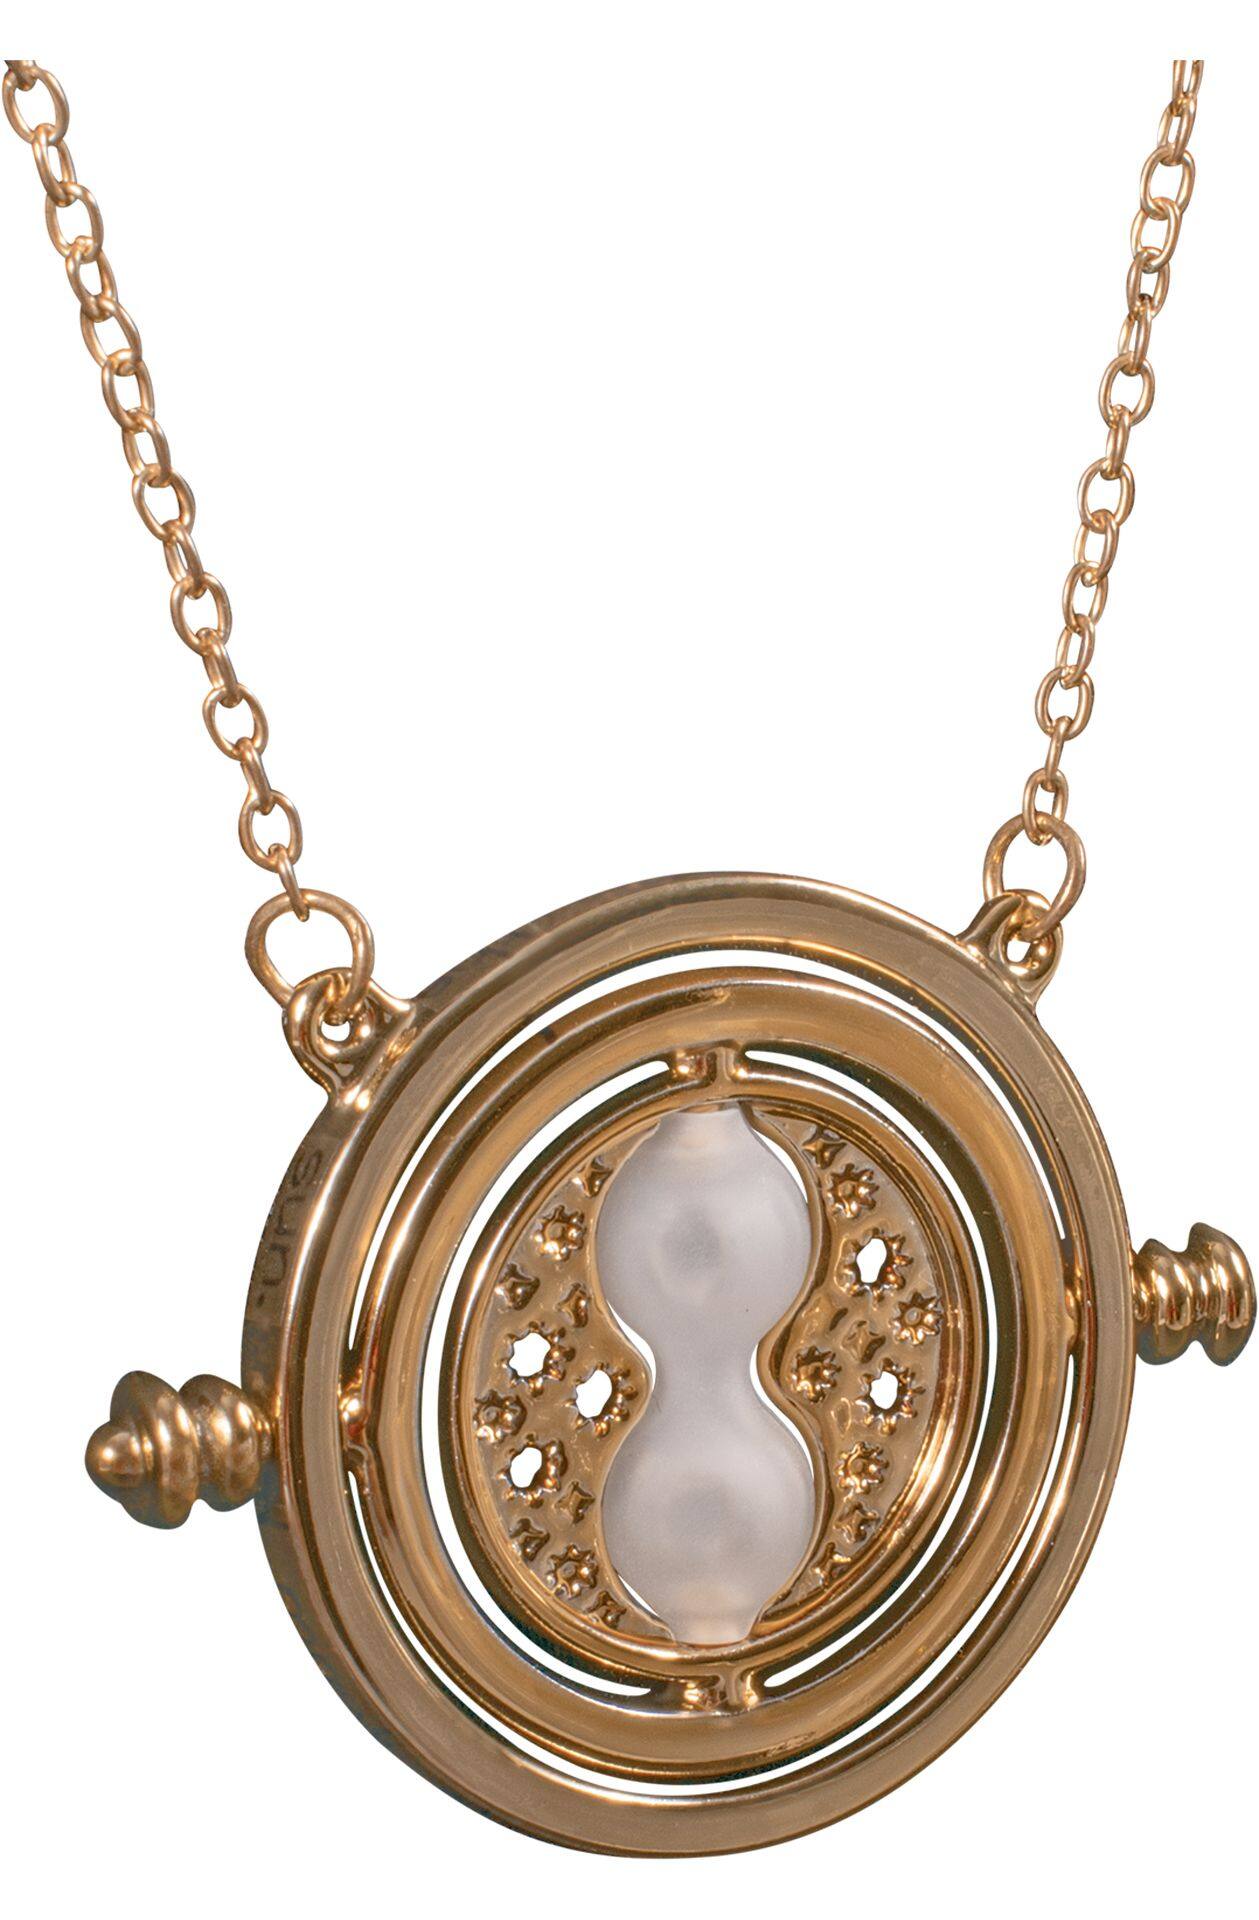 hermione necklace accessory 2f306beb d199 47d0 9308 de2d236c2fab jpgrendition